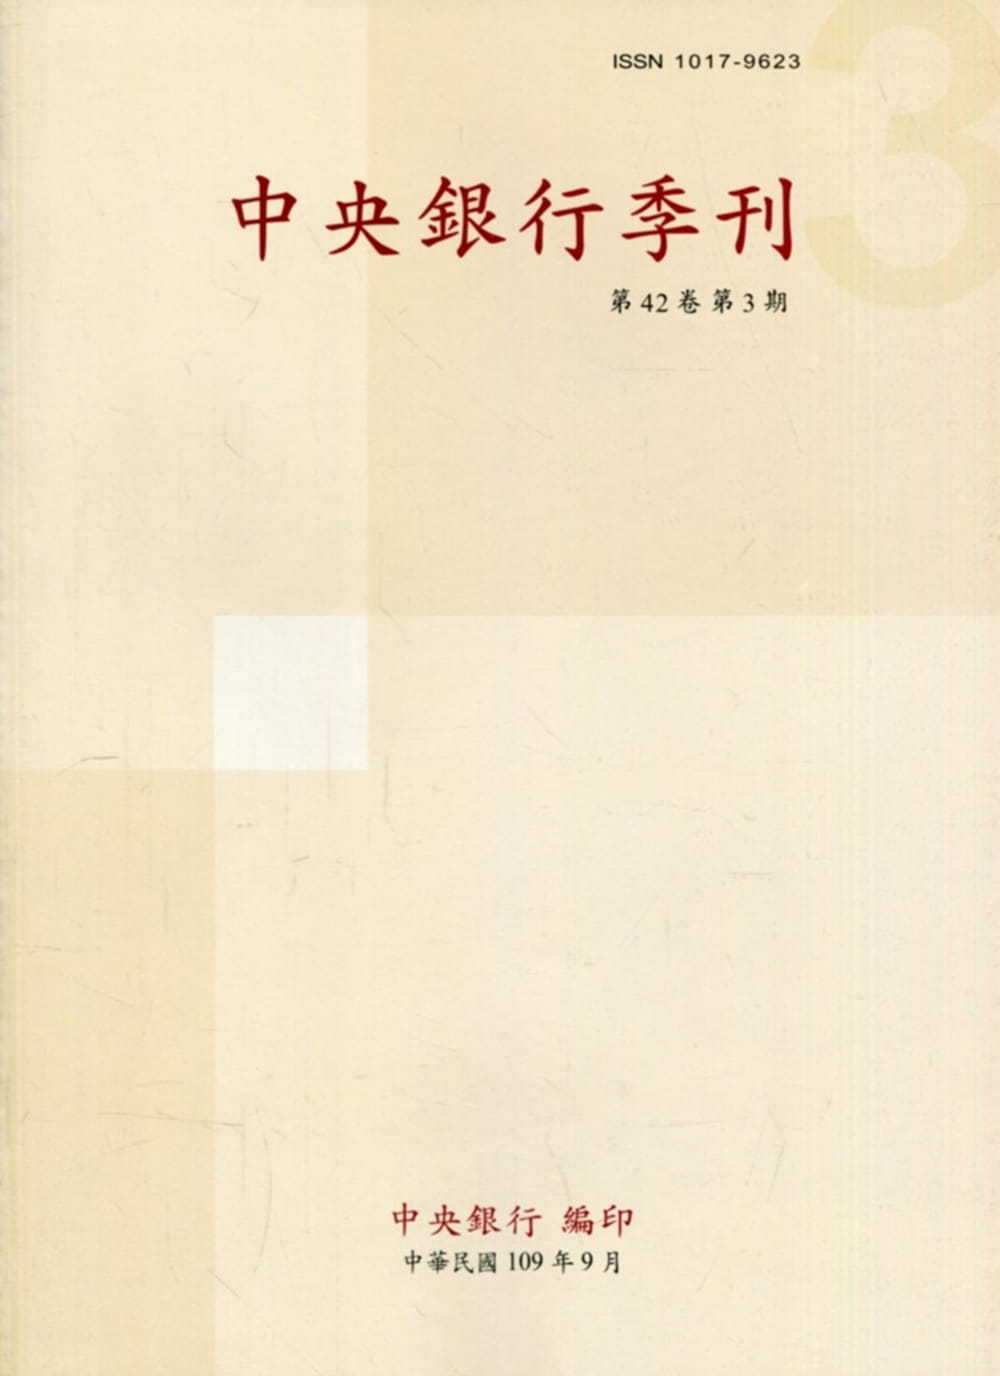 中央銀行季刊42卷3期(109.09)